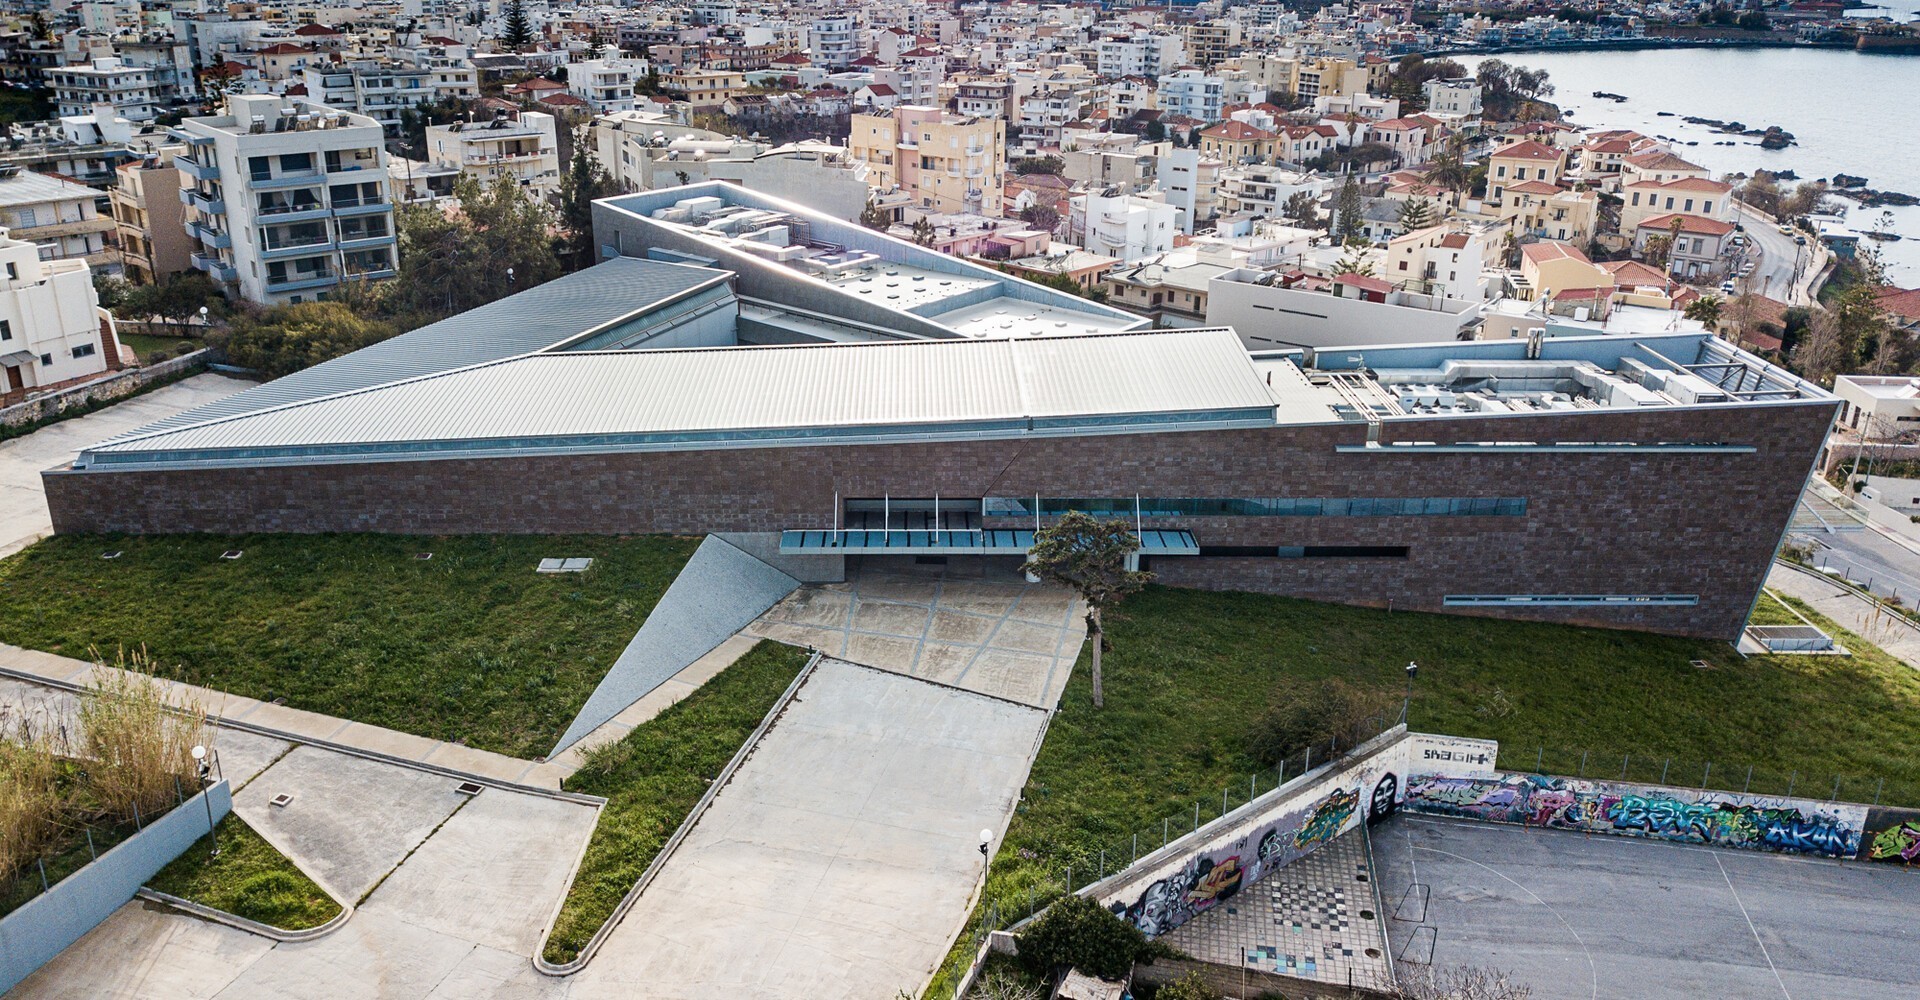 Το νέο Αρχαιολογικό Μουσείο Χανίων με θέα τη θάλασσα. Διακρίνονται οι δύο βασικοί μονολιθικοί όγκοι και το αίθριο μεταξύ τους